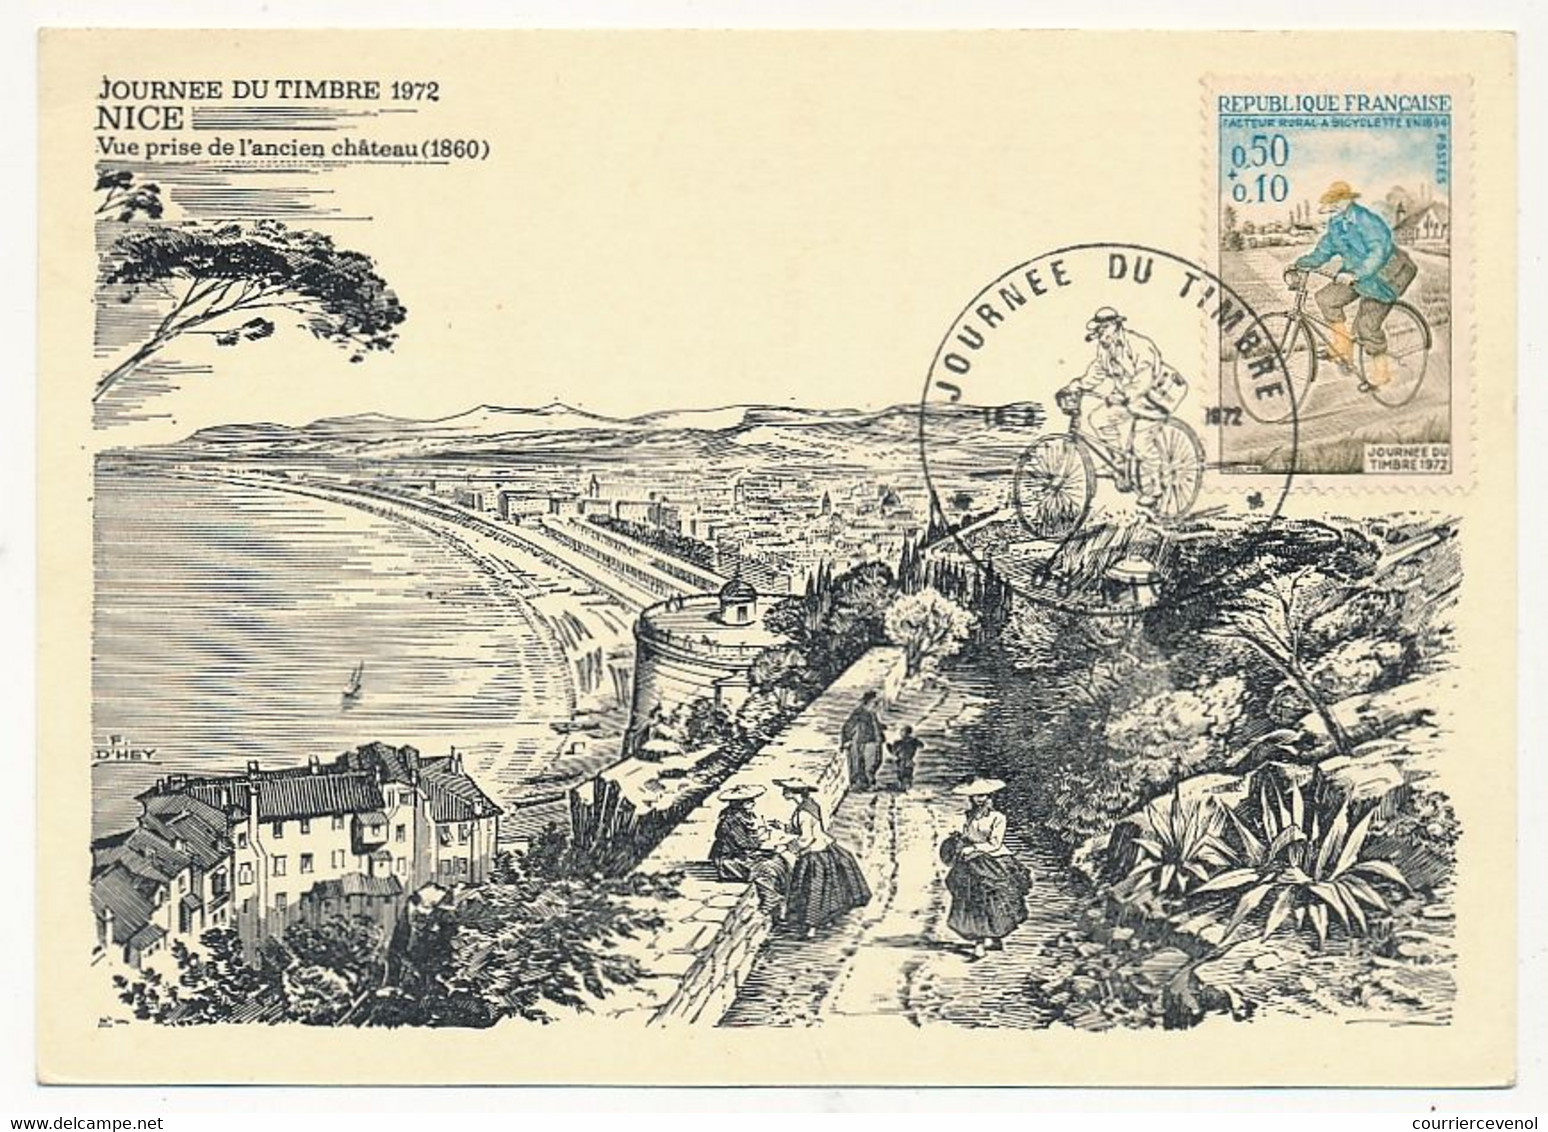 FRANCE - Carte Locale - Journée Du Timbre 1972 - Facteur Rural à Bicyclette - 06 NICE - 18 Mars 1972 - Giornata Del Francobollo